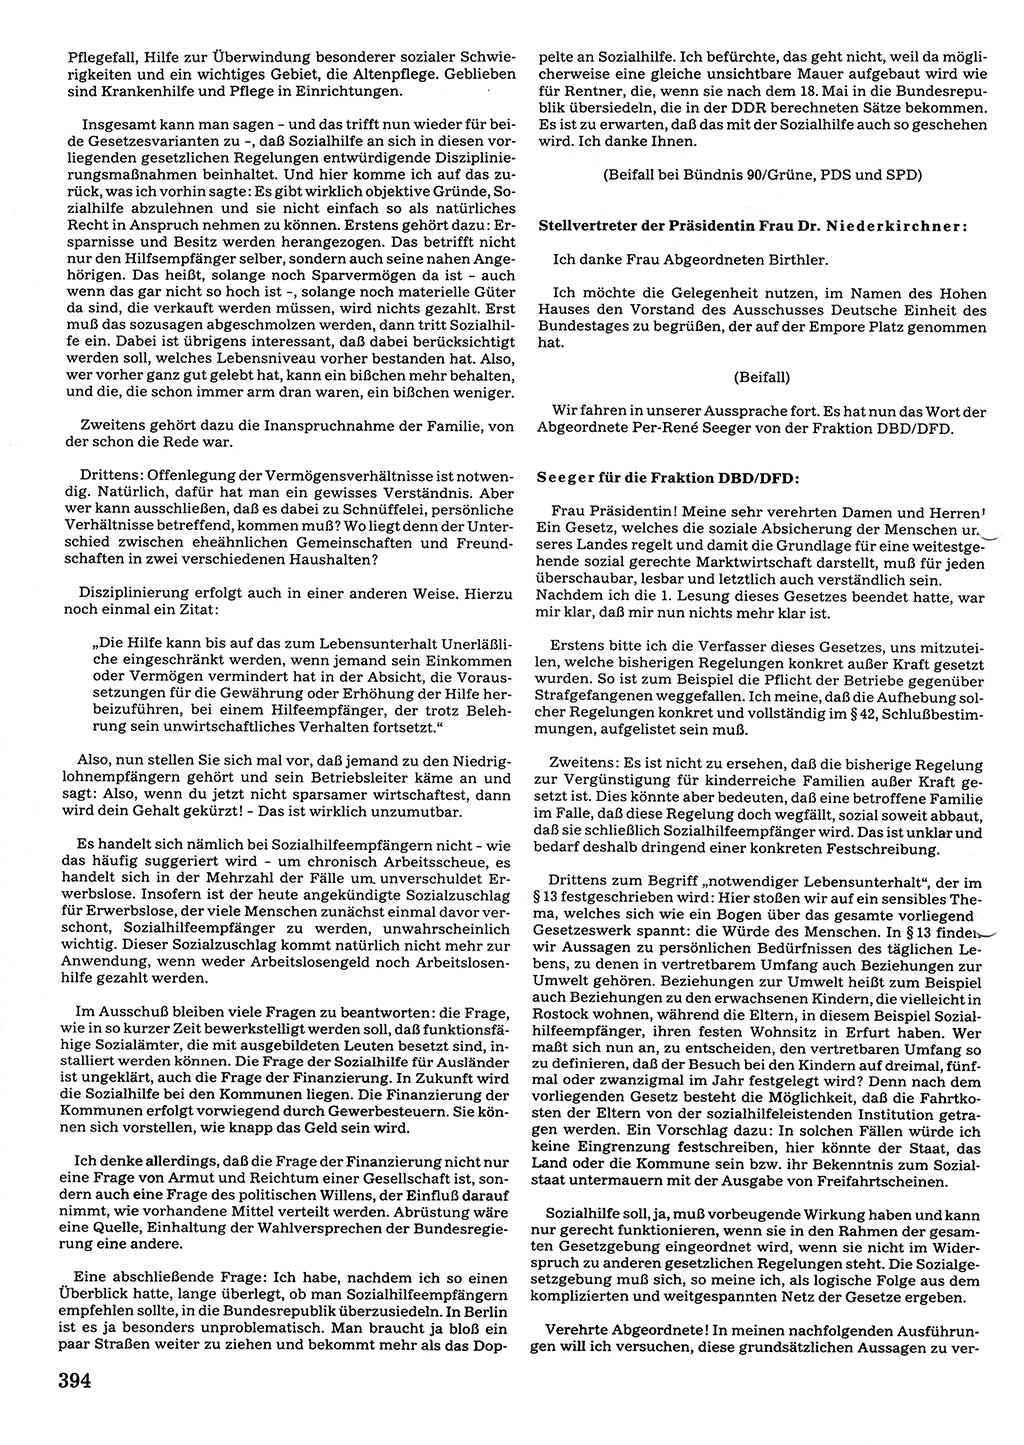 Tagungen der Volkskammer (VK) der Deutschen Demokratischen Republik (DDR), 10. Wahlperiode 1990, Seite 394 (VK. DDR 10. WP. 1990, Prot. Tg. 1-38, 5.4.-2.10.1990, S. 394)